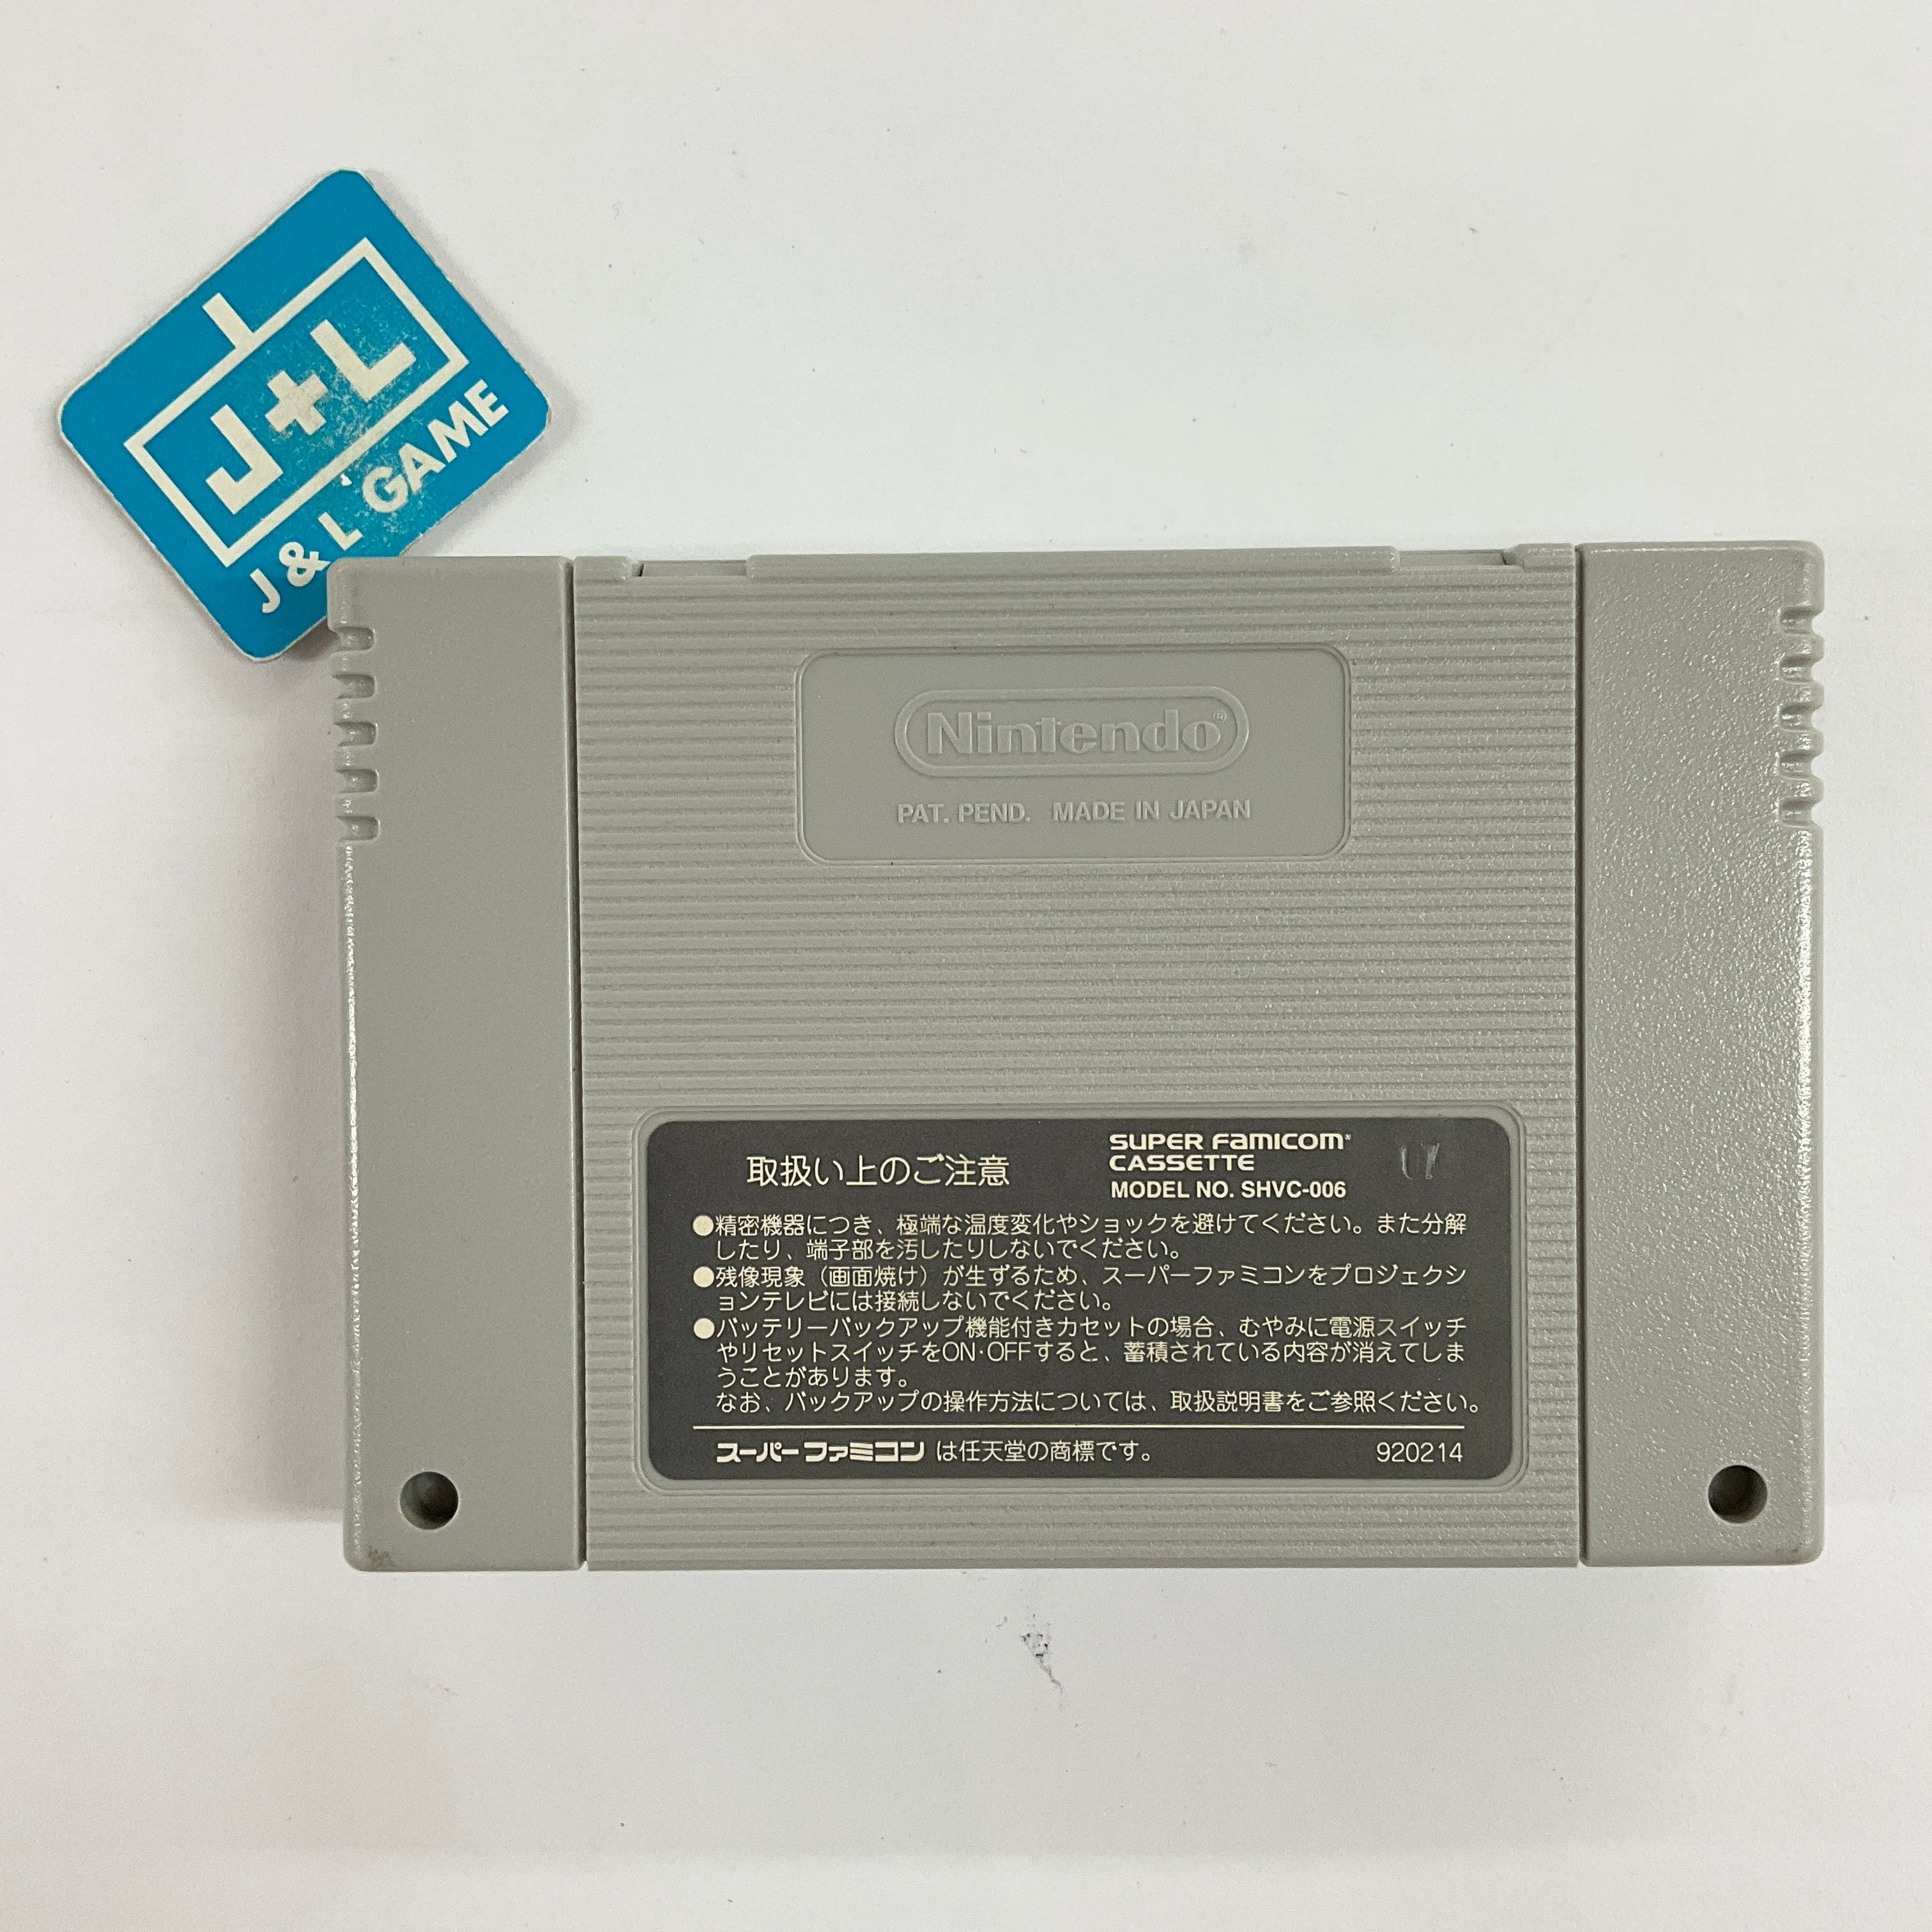 Chrono Trigger - (SFC) Super Famicom [Pre-Owned] (Japanese Import) Video Games SquareSoft   